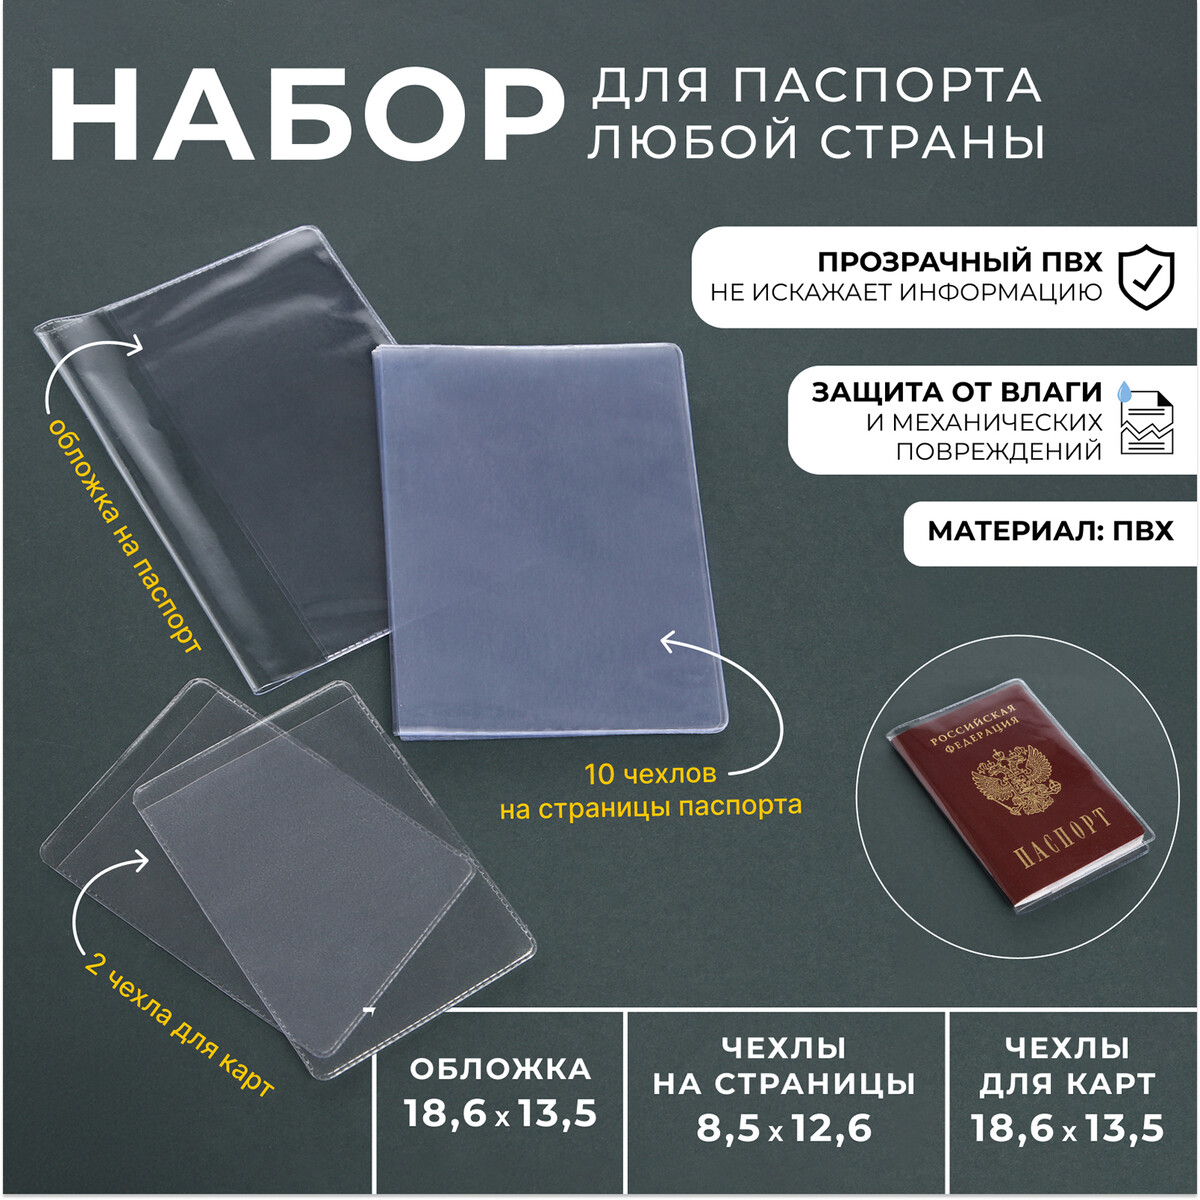 Набор для паспорта: обложка на паспорт; 10 чехлов на страницы паспорта, 2 чехла для карт, цвет прозрачный набор чехлов прогулочного блока для коляски priam iv mirage grey cybex